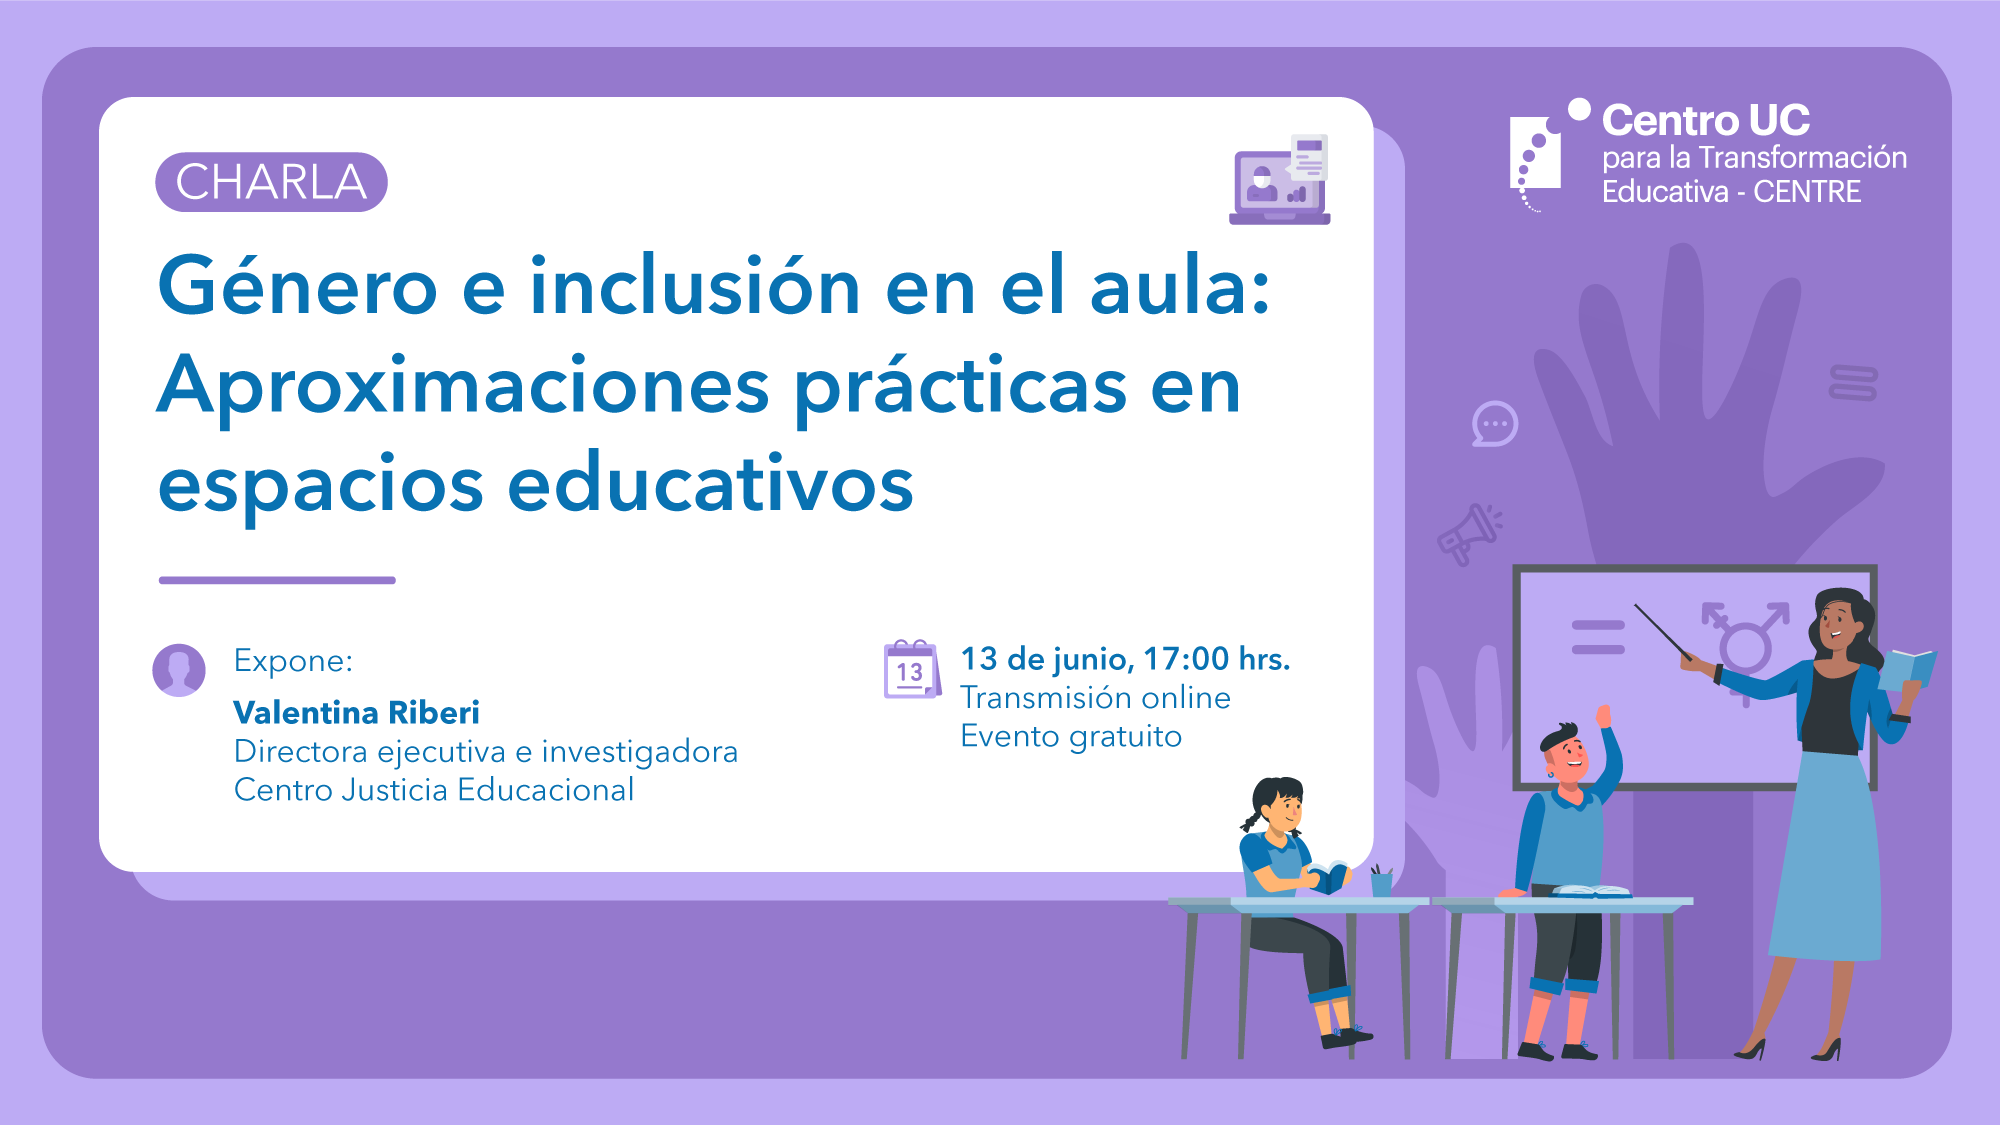 Charla: "Liderando el cambio en las prácticas educativas: Metodologías de mejoramiento de la calidad". 12 de abril, 17:00 horas.